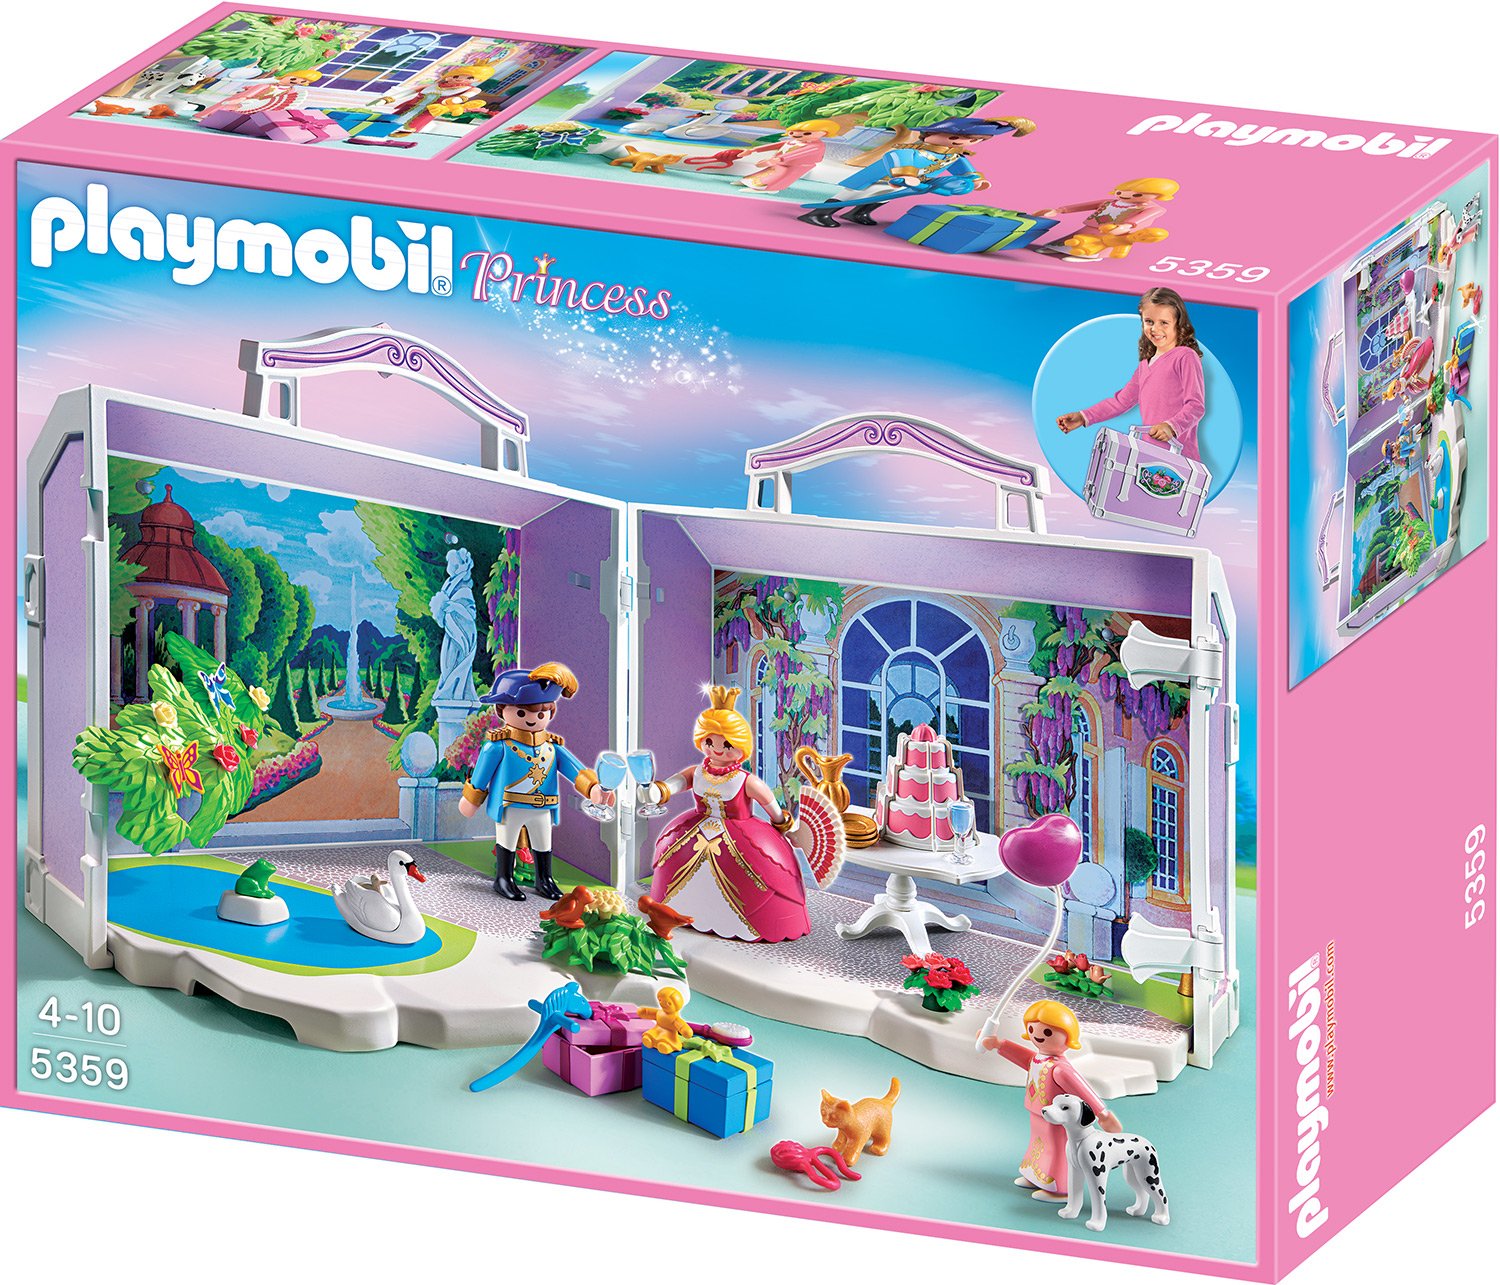 Playmobil Princess Take Along Princess Birthday